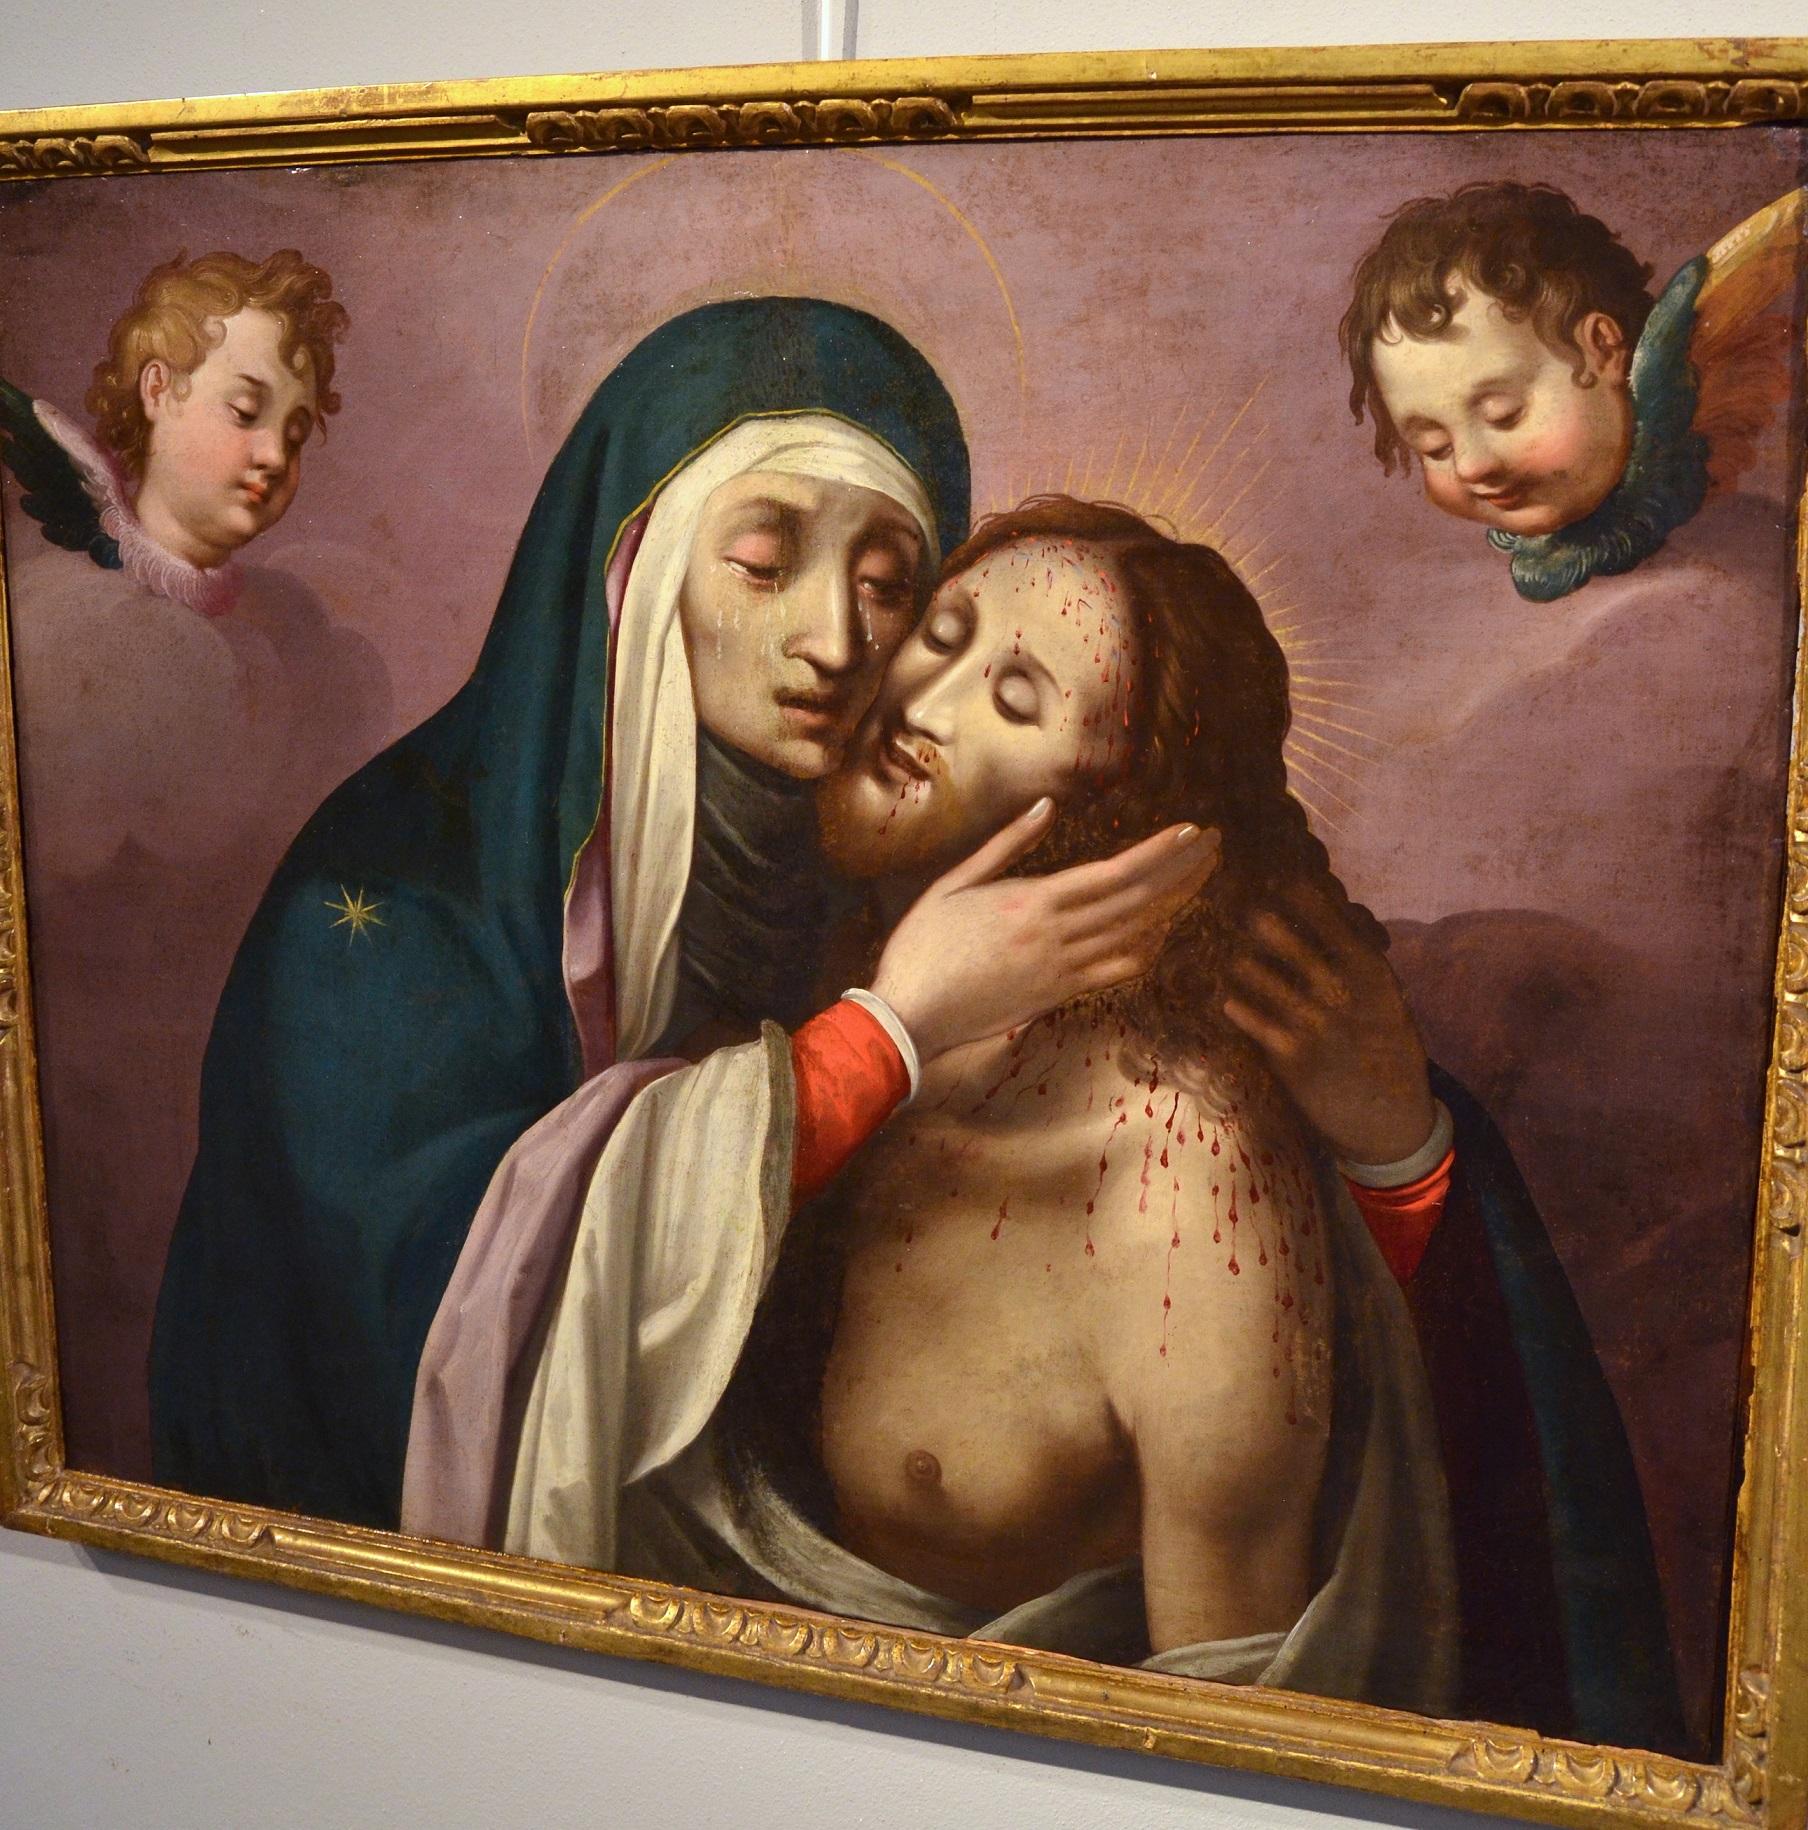 Peintre actif à Rome au XVIe siècle - entourage de Scipione Pulzone (Gaeta 1550 - Rome 1598)
La Pietà (Christ mort soutenu par la Madone)

huile sur toile, cm. 78 x 94
encadré cm. 86 x 102

En observant la qualité précieuse ainsi que l'élégance du